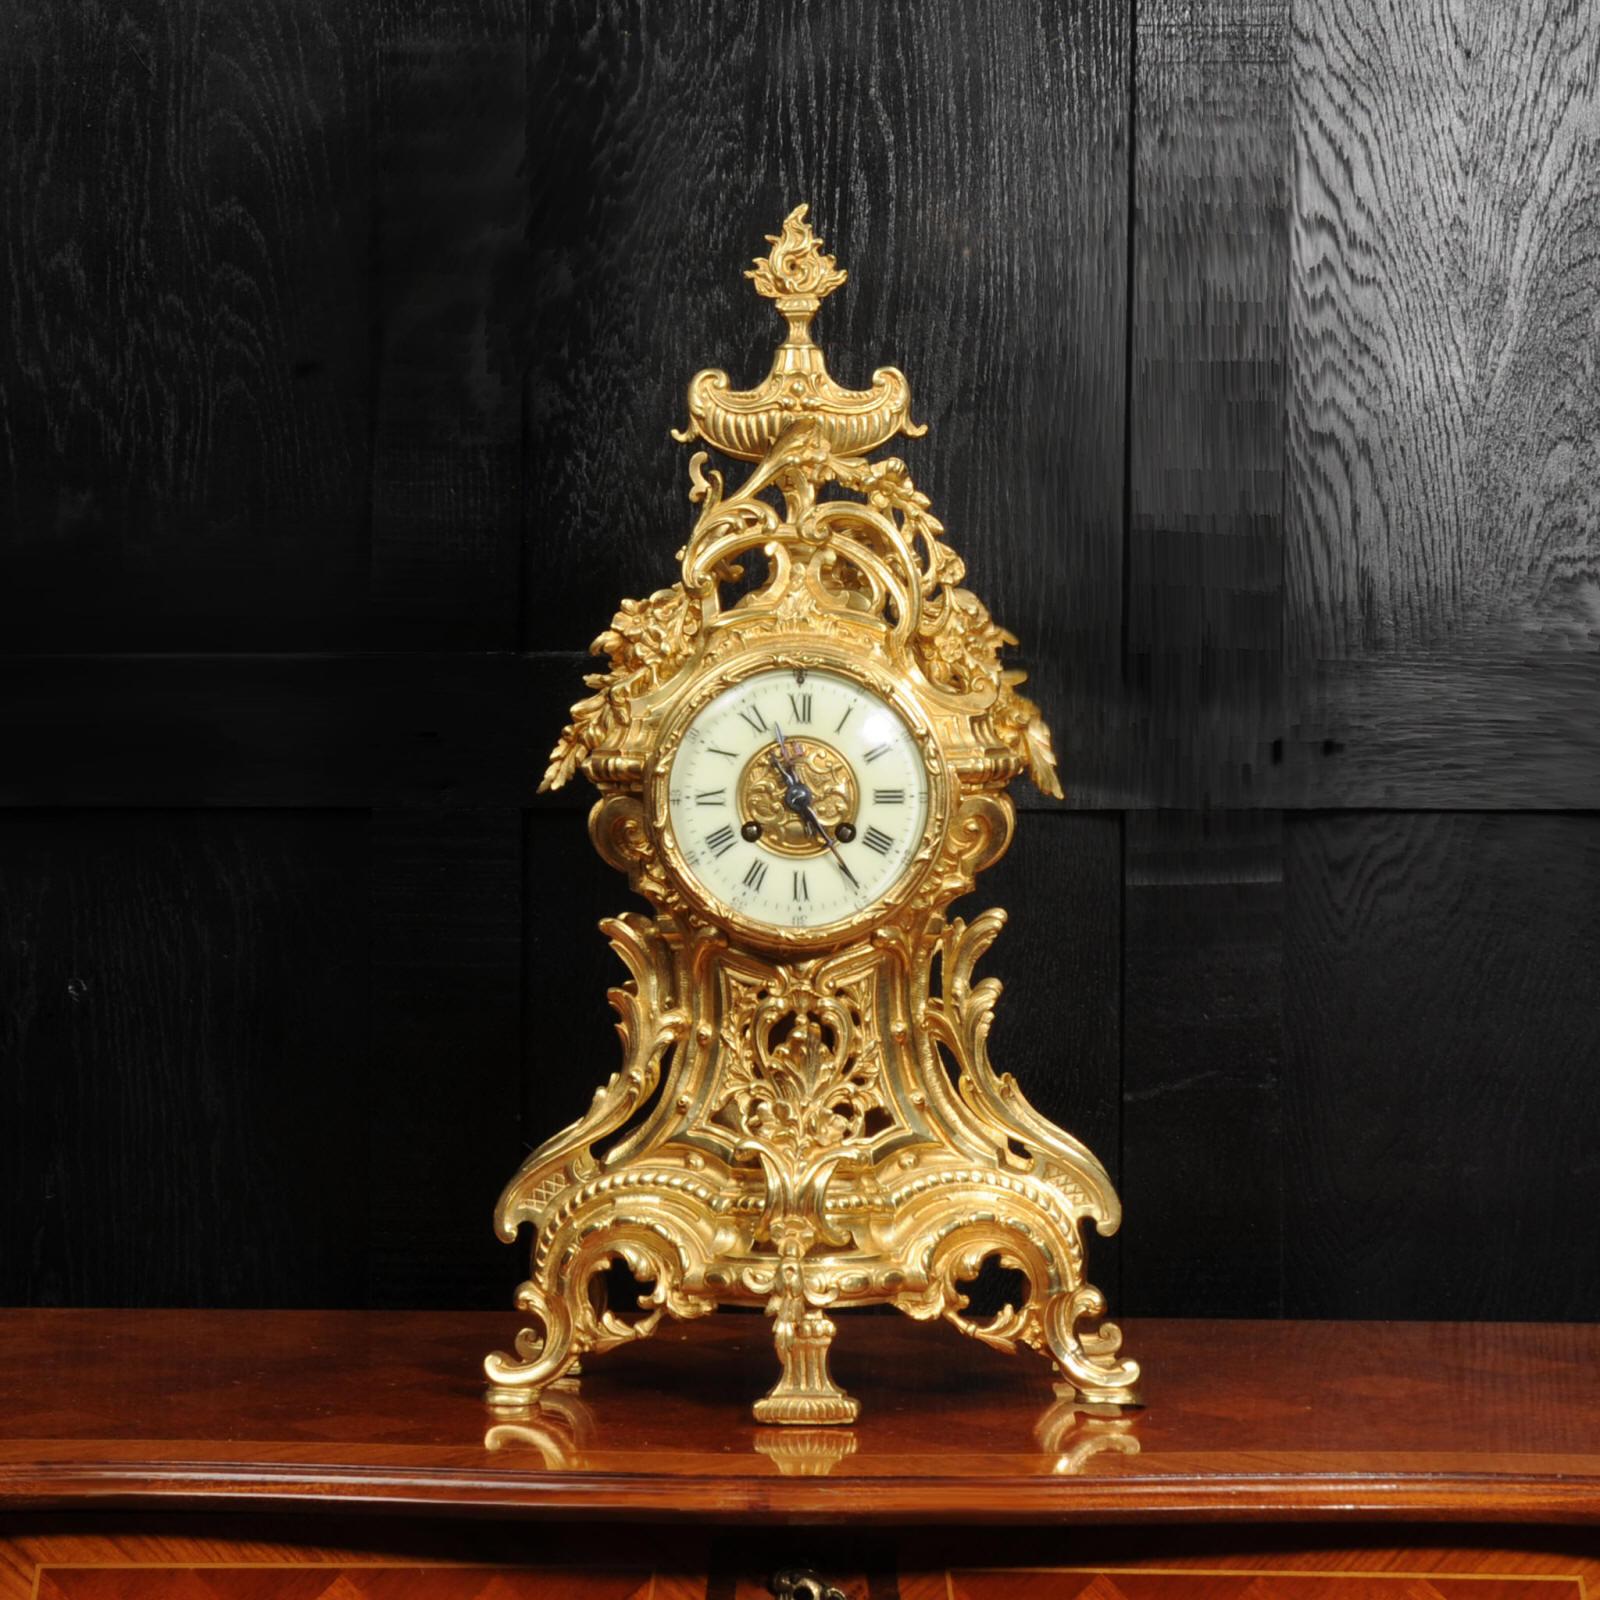 Eine große und beeindruckende antike französische Uhr von Louis Japy. Sie ist wunderschön aus vergoldeter Bronze im Stil von Louis XV gefertigt. Tailliertes Gehäuse mit einer gesäumten Vorderseite, die den Blick auf das sanft schwingende Pendel im